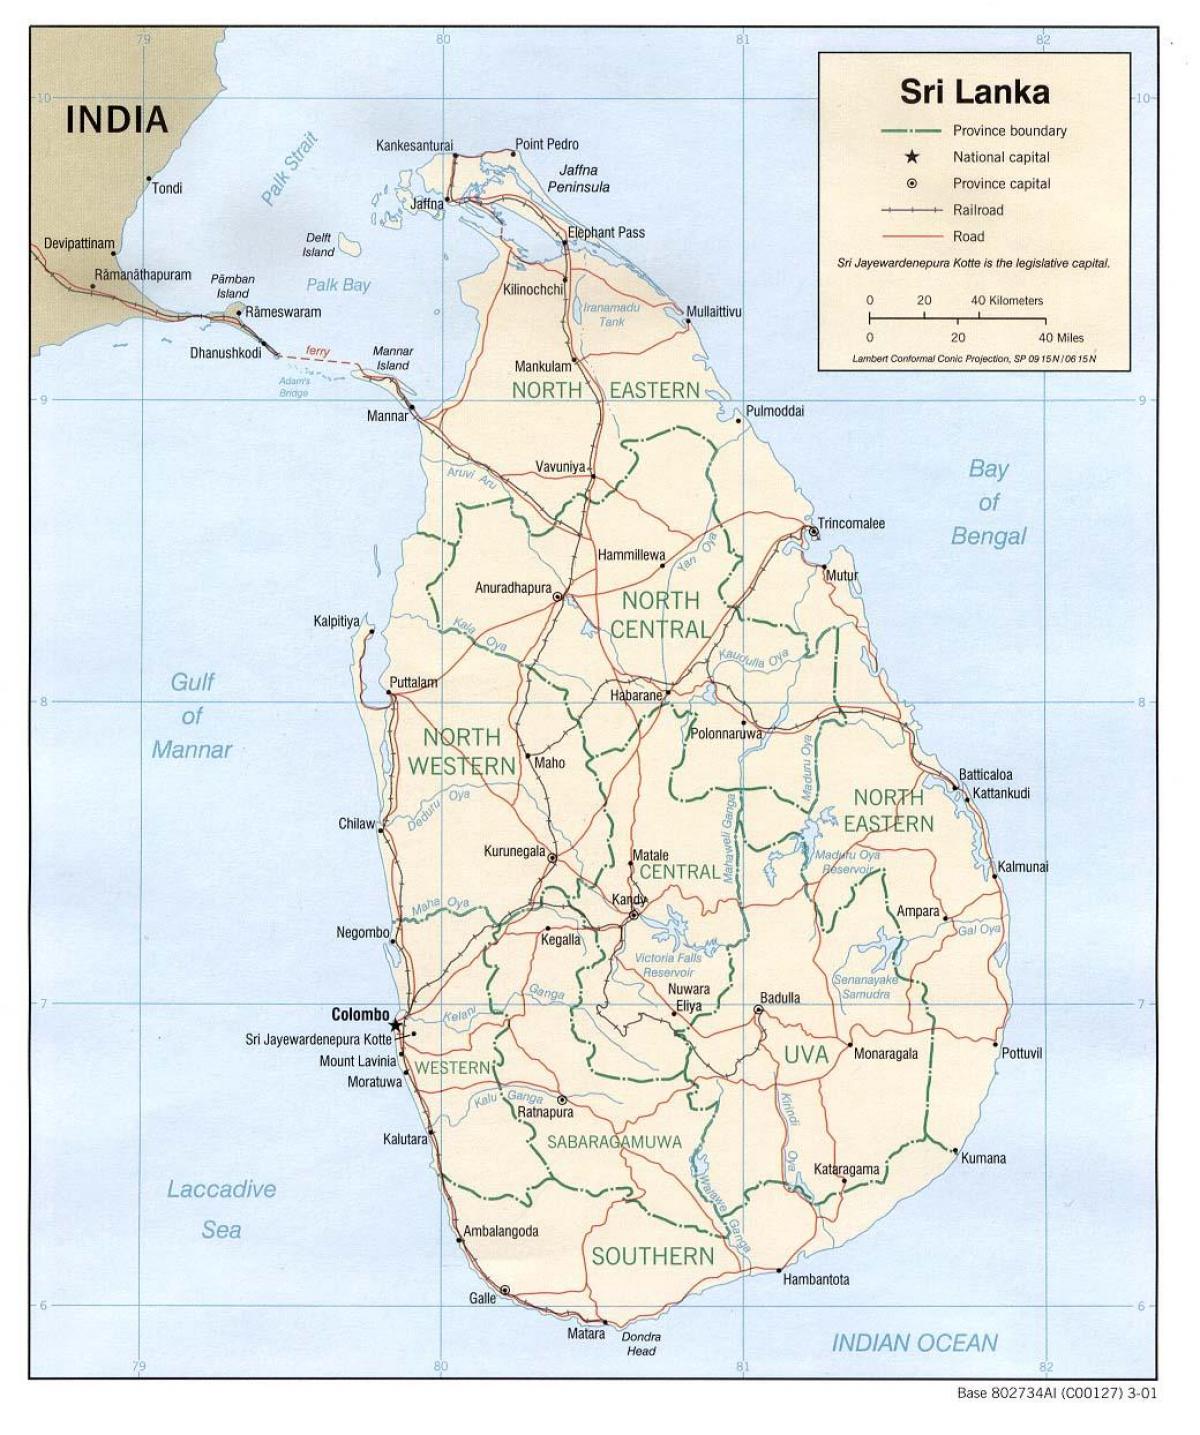 سری لنکا کے بس کا نقشہ